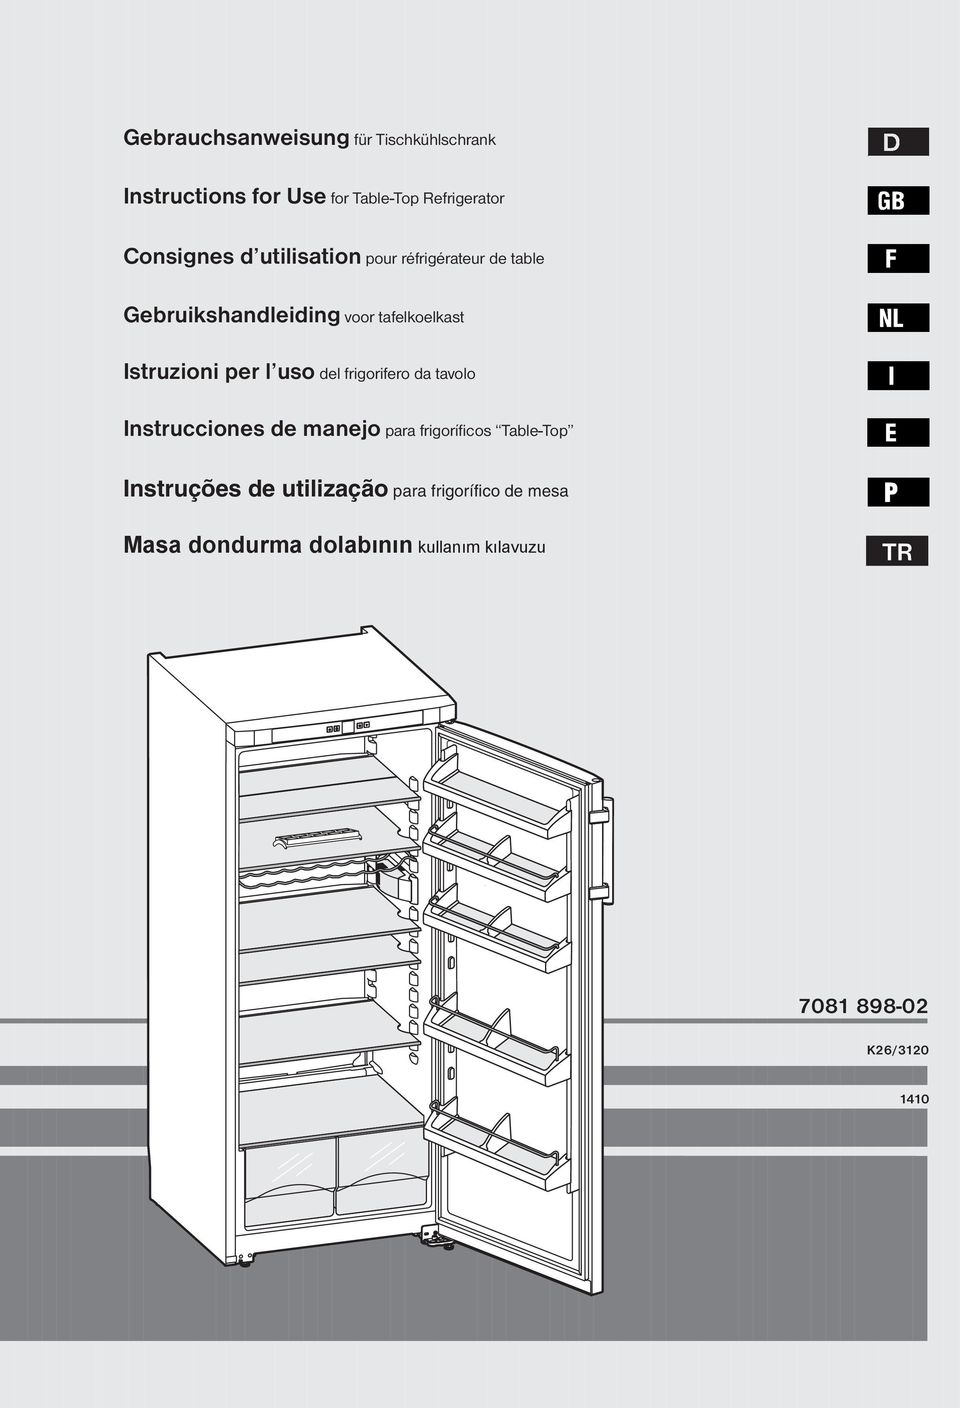 del frigorifero da tavolo Instrucciones de manejo para frigoríficos Table-Top Instruções de